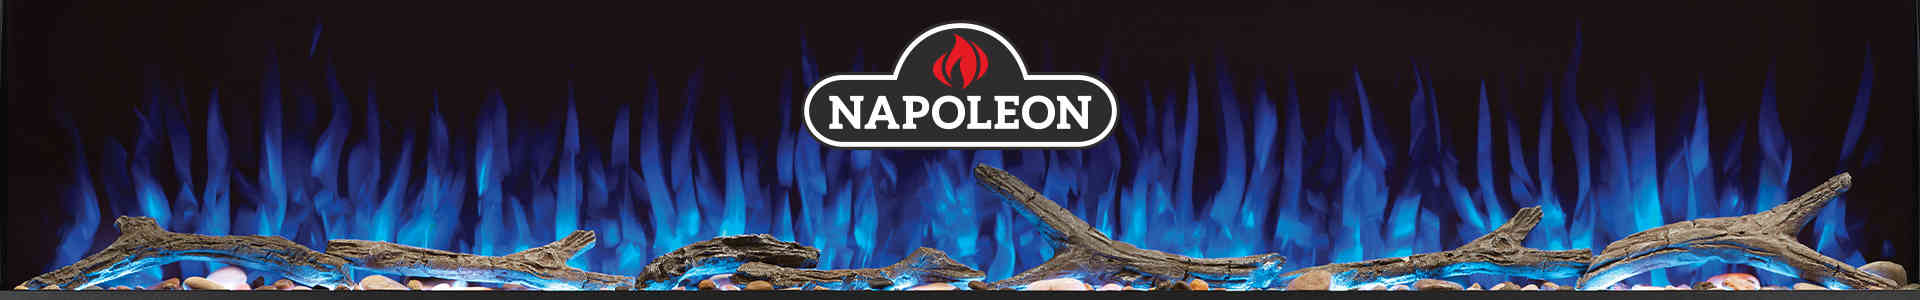 Napoleon Electric Fireplaces